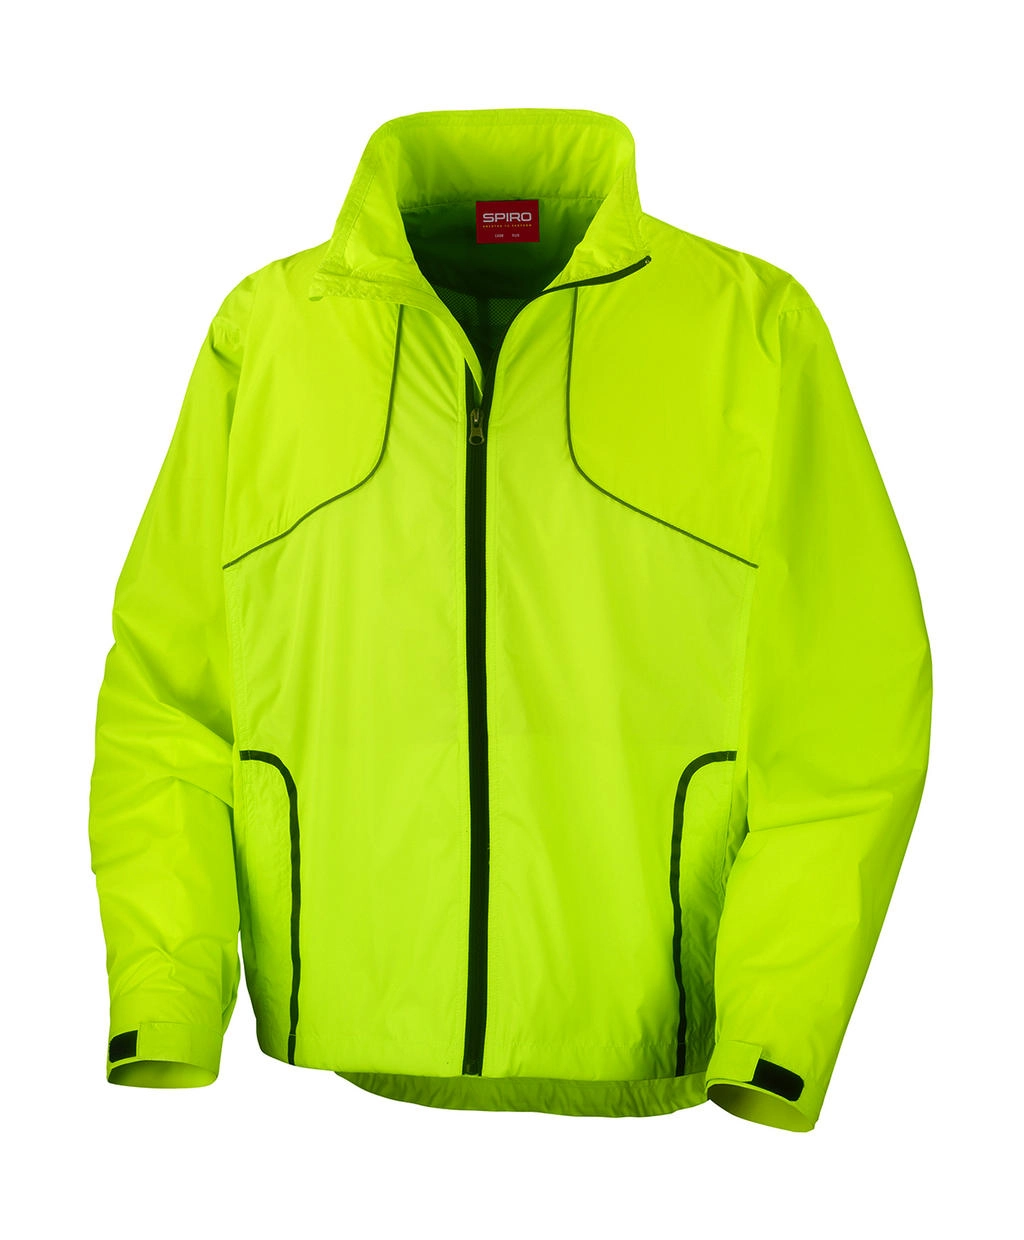 Spiro Cycling Jacket zum Besticken und Bedrucken in der Farbe Neon Lime mit Ihren Logo, Schriftzug oder Motiv.